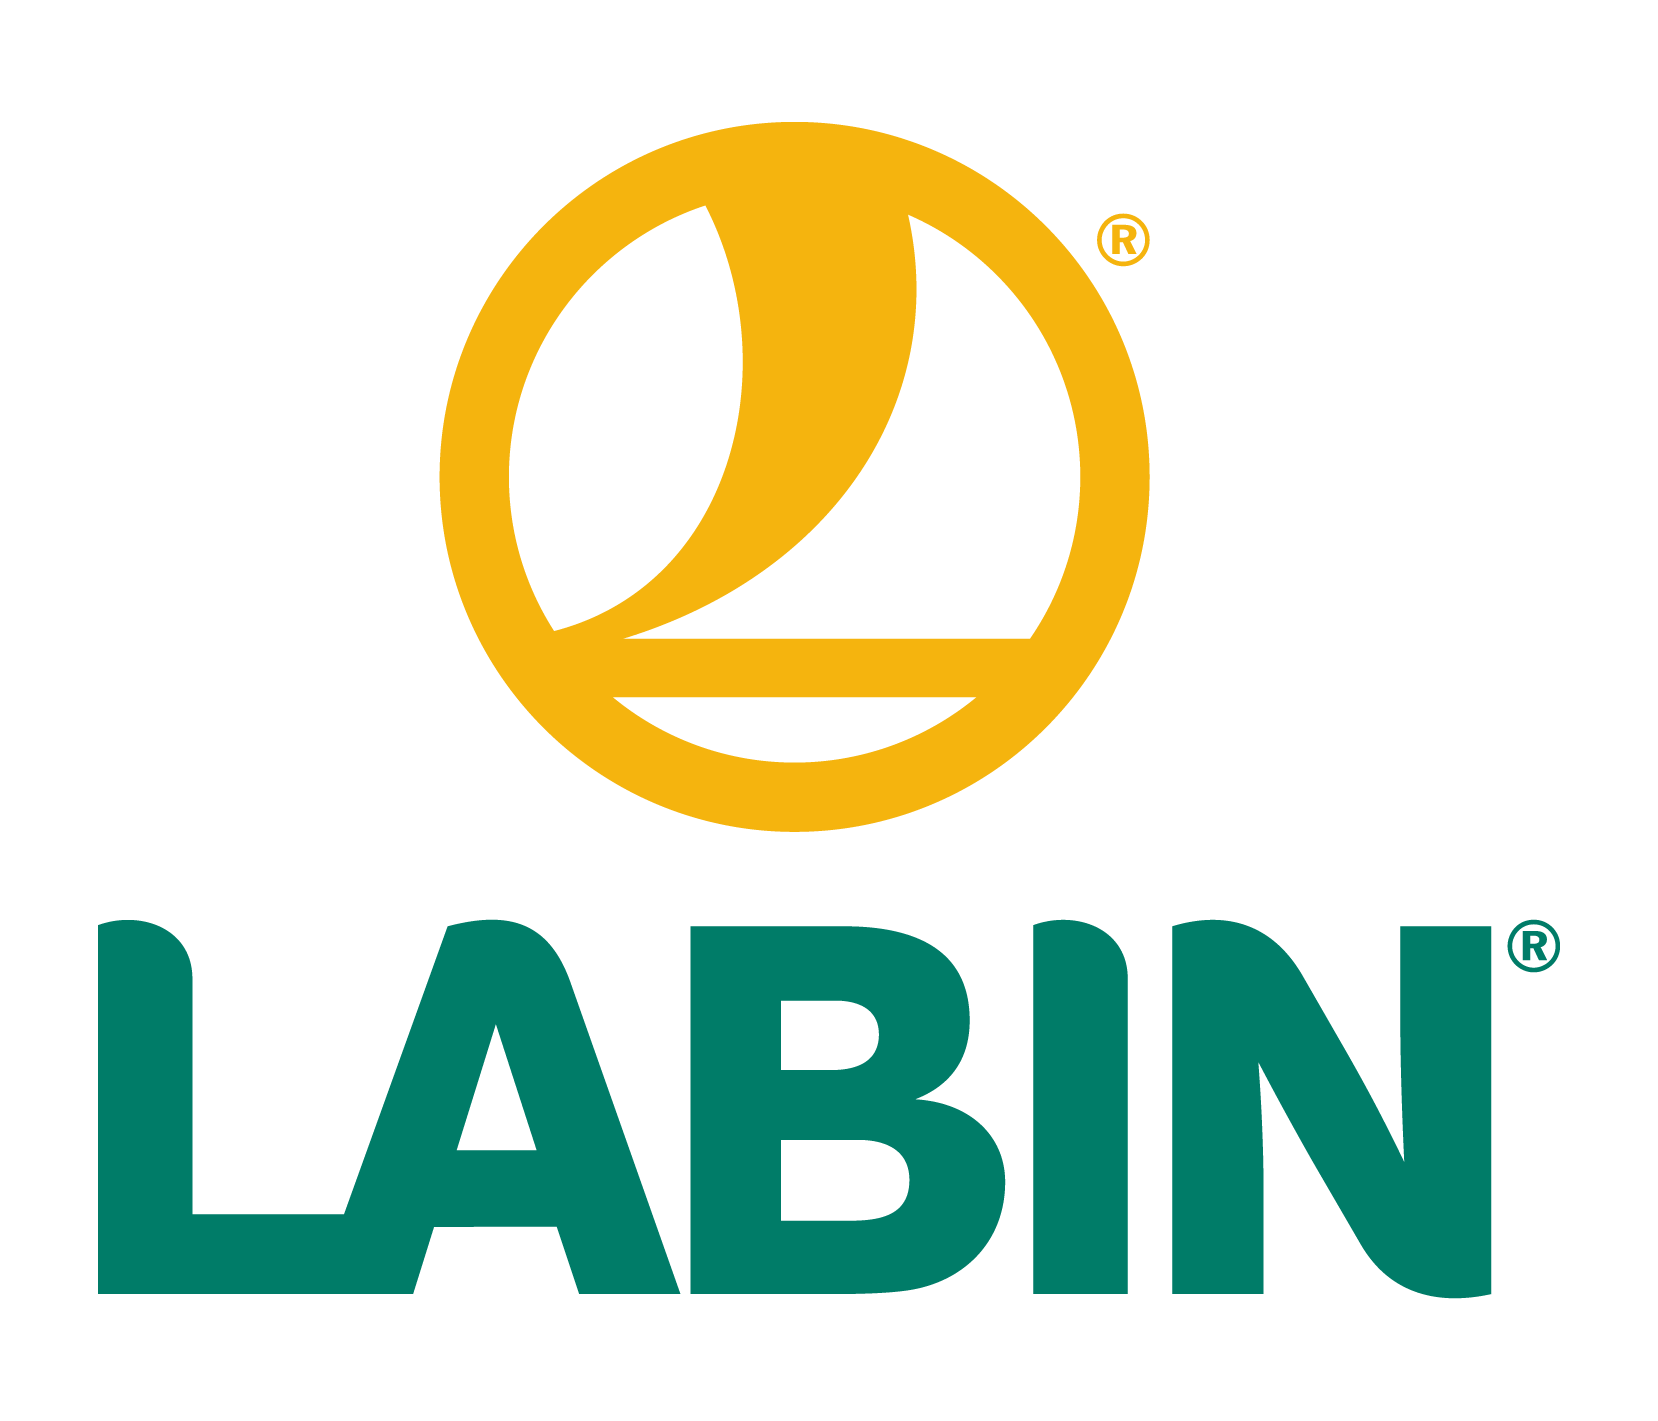 Productos LABIN, SL.